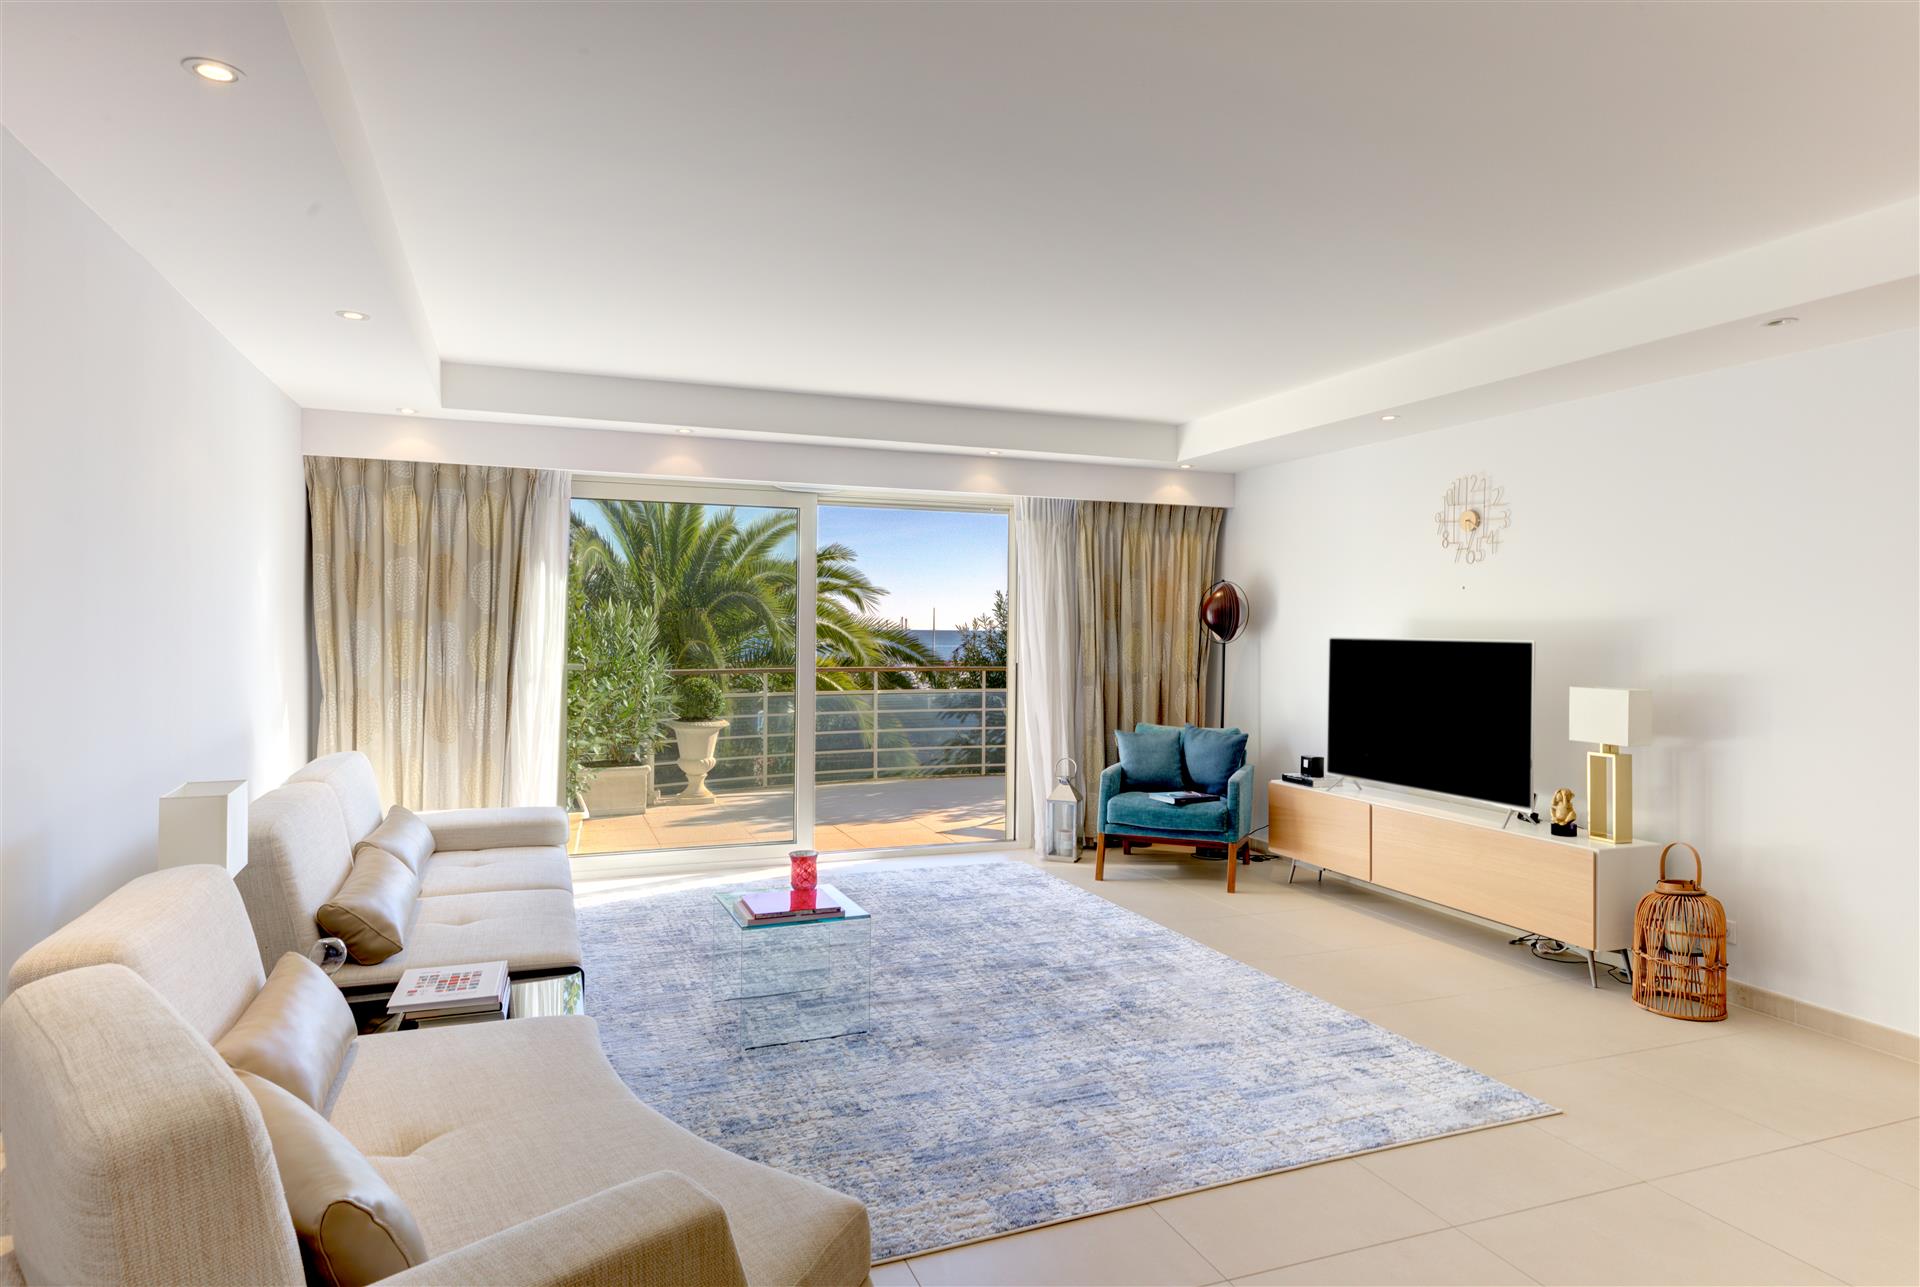 Nádherný nový luxusní byt 150m2, s výhledem na moře. Přímý vlastník